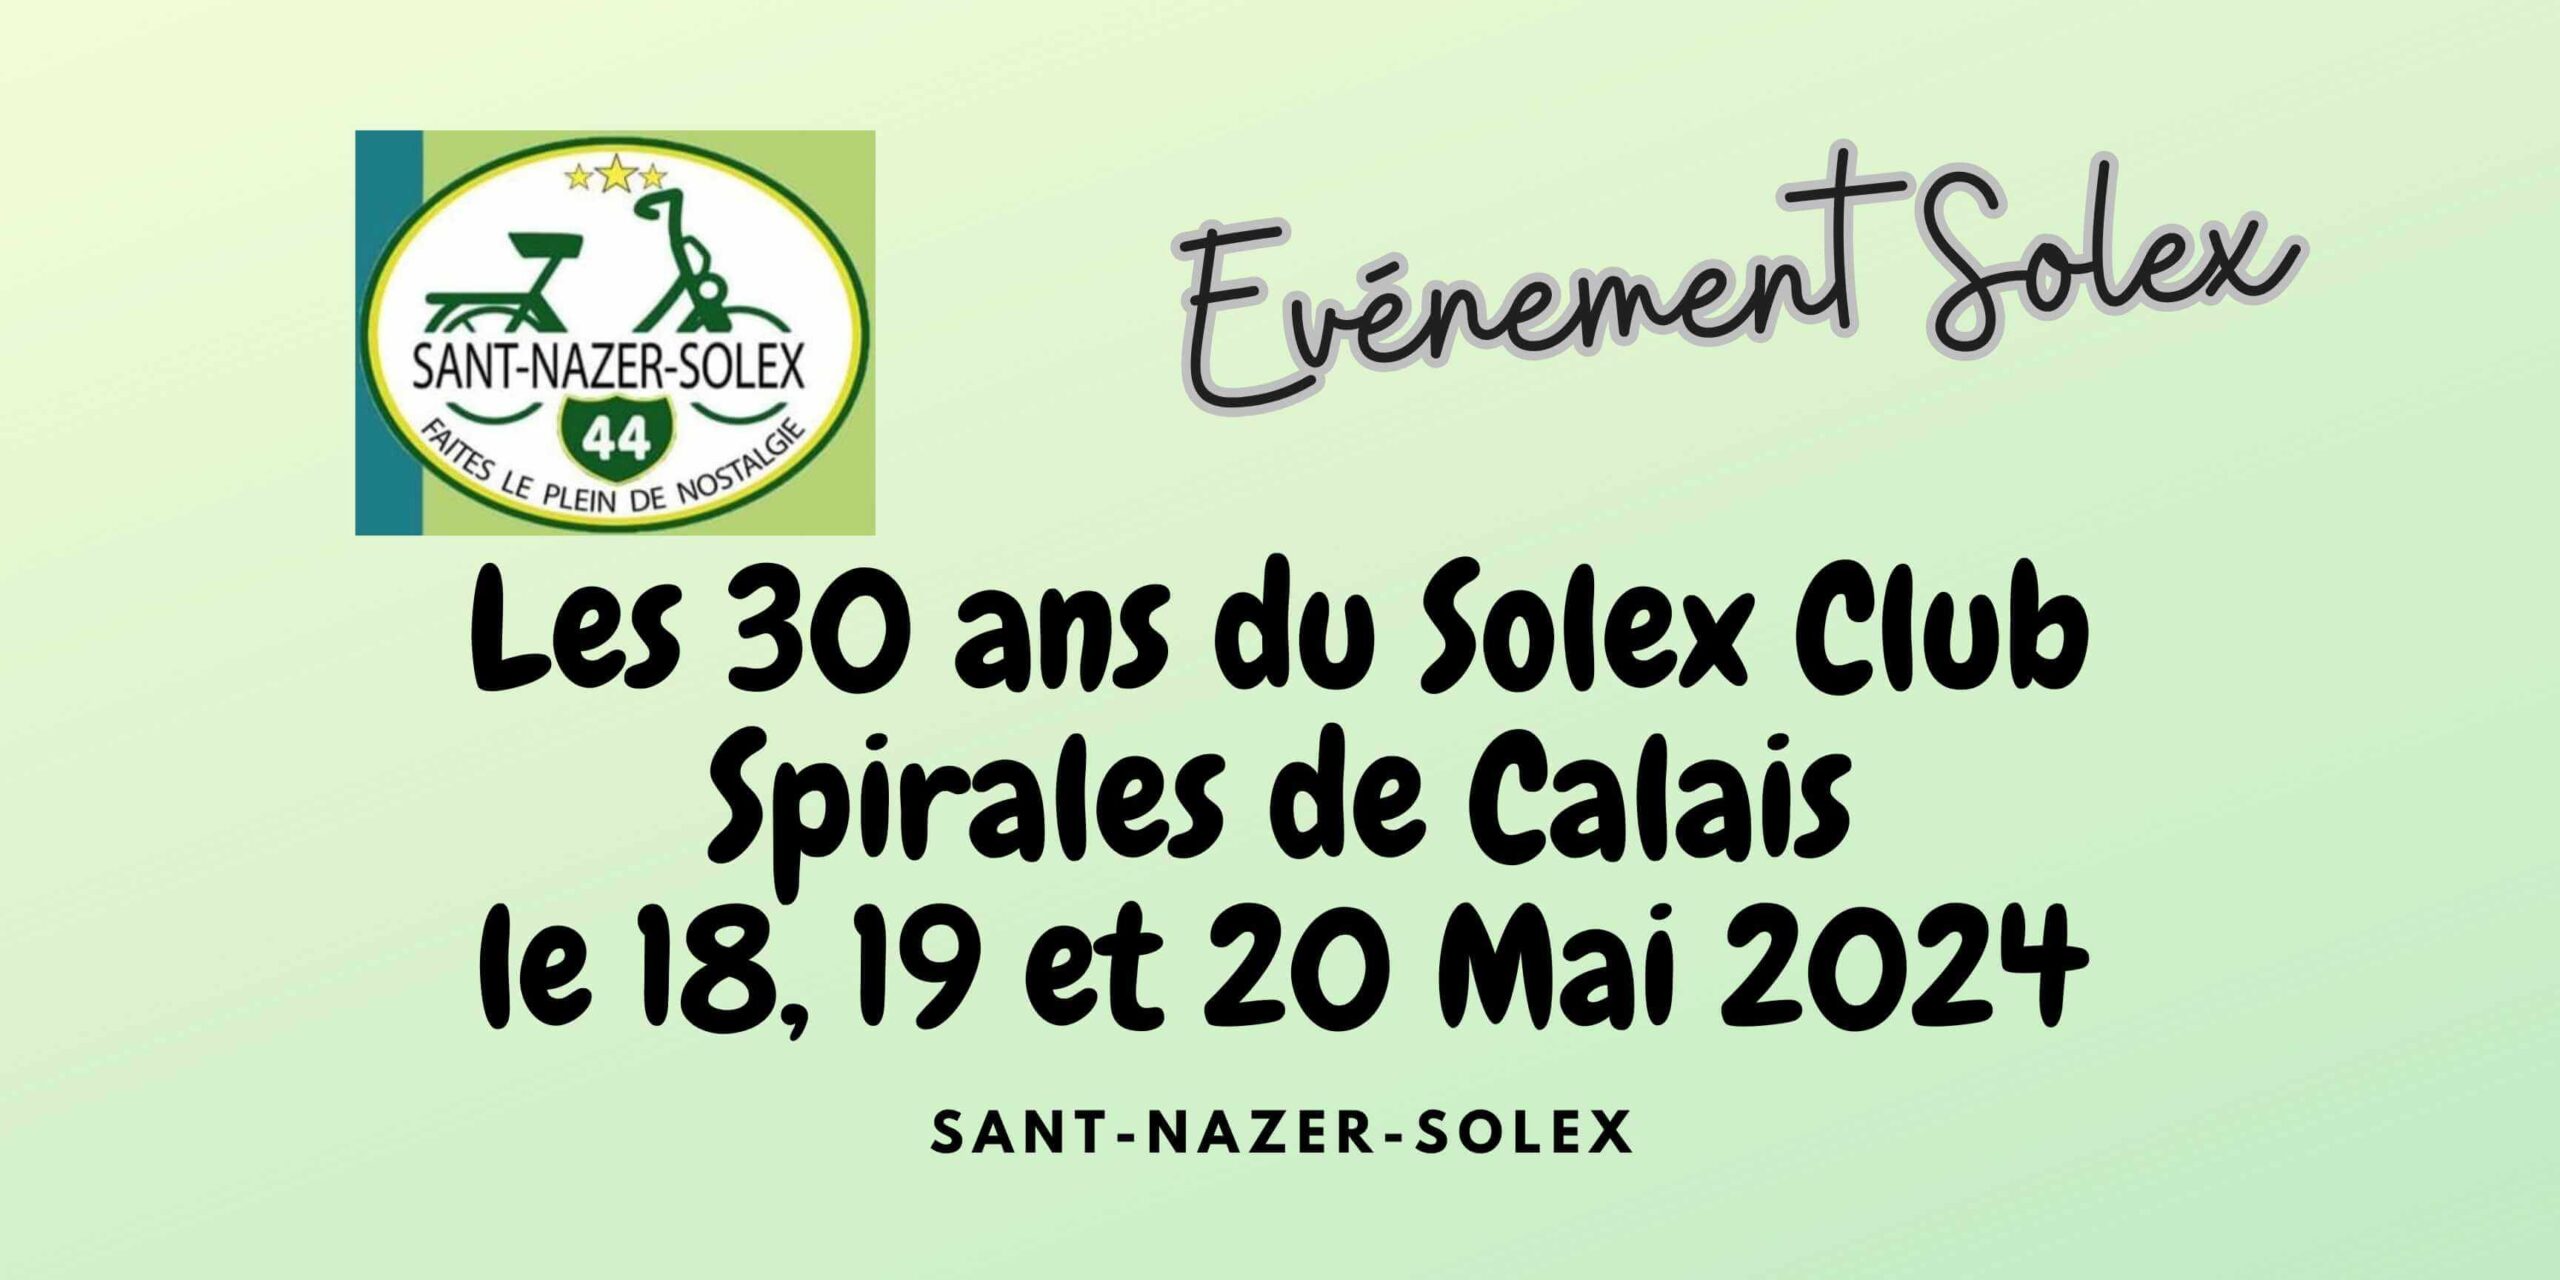 SANT-NAZER-SOLEX les 30 ans du Solex Club Spirales de Calais (pas de calais)